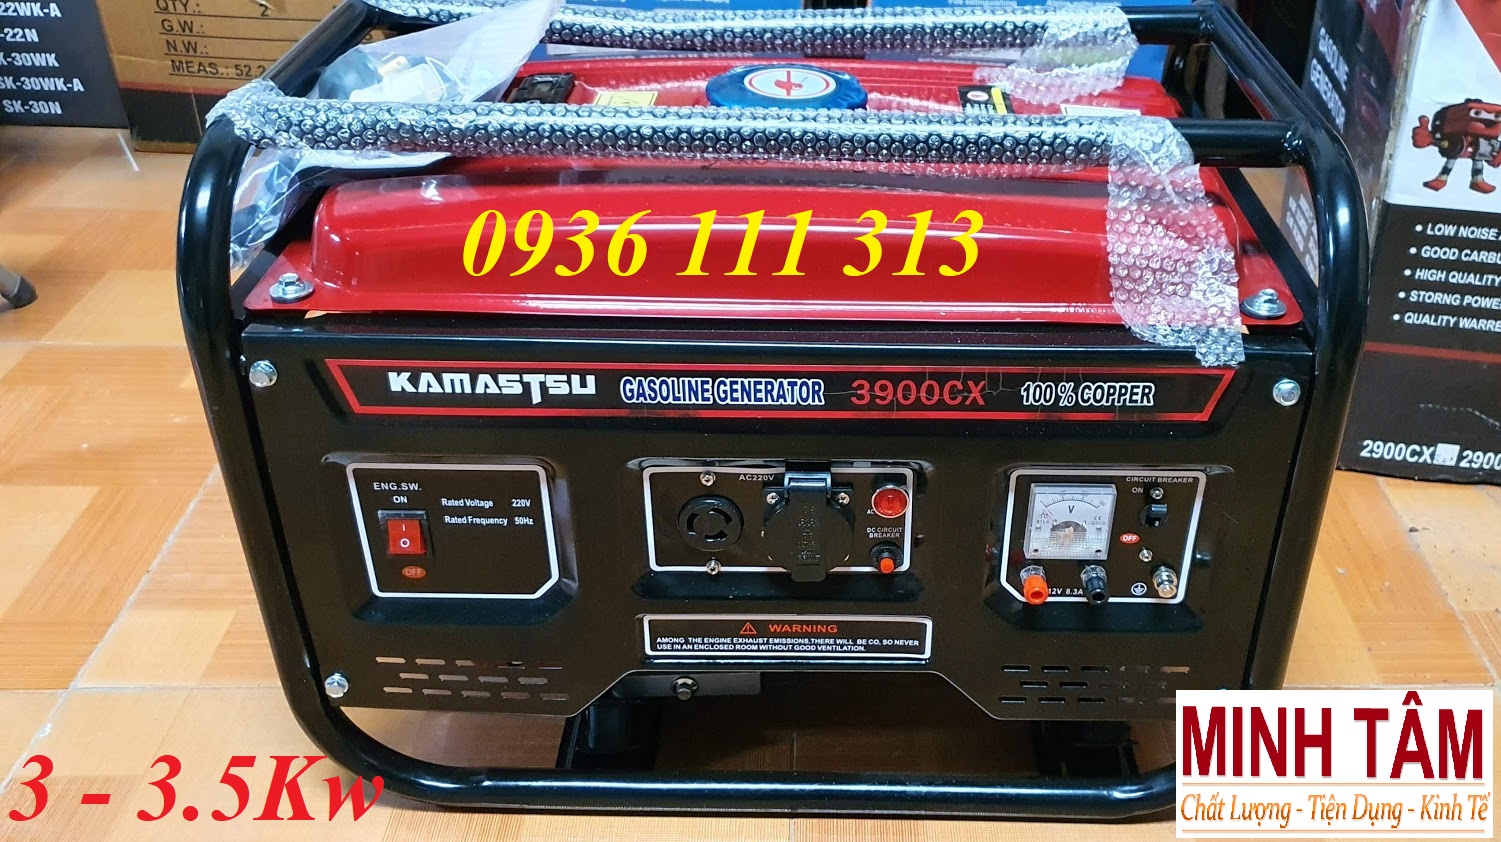 Máy Phát Điện 3Kw - Kamastsu 3900cx